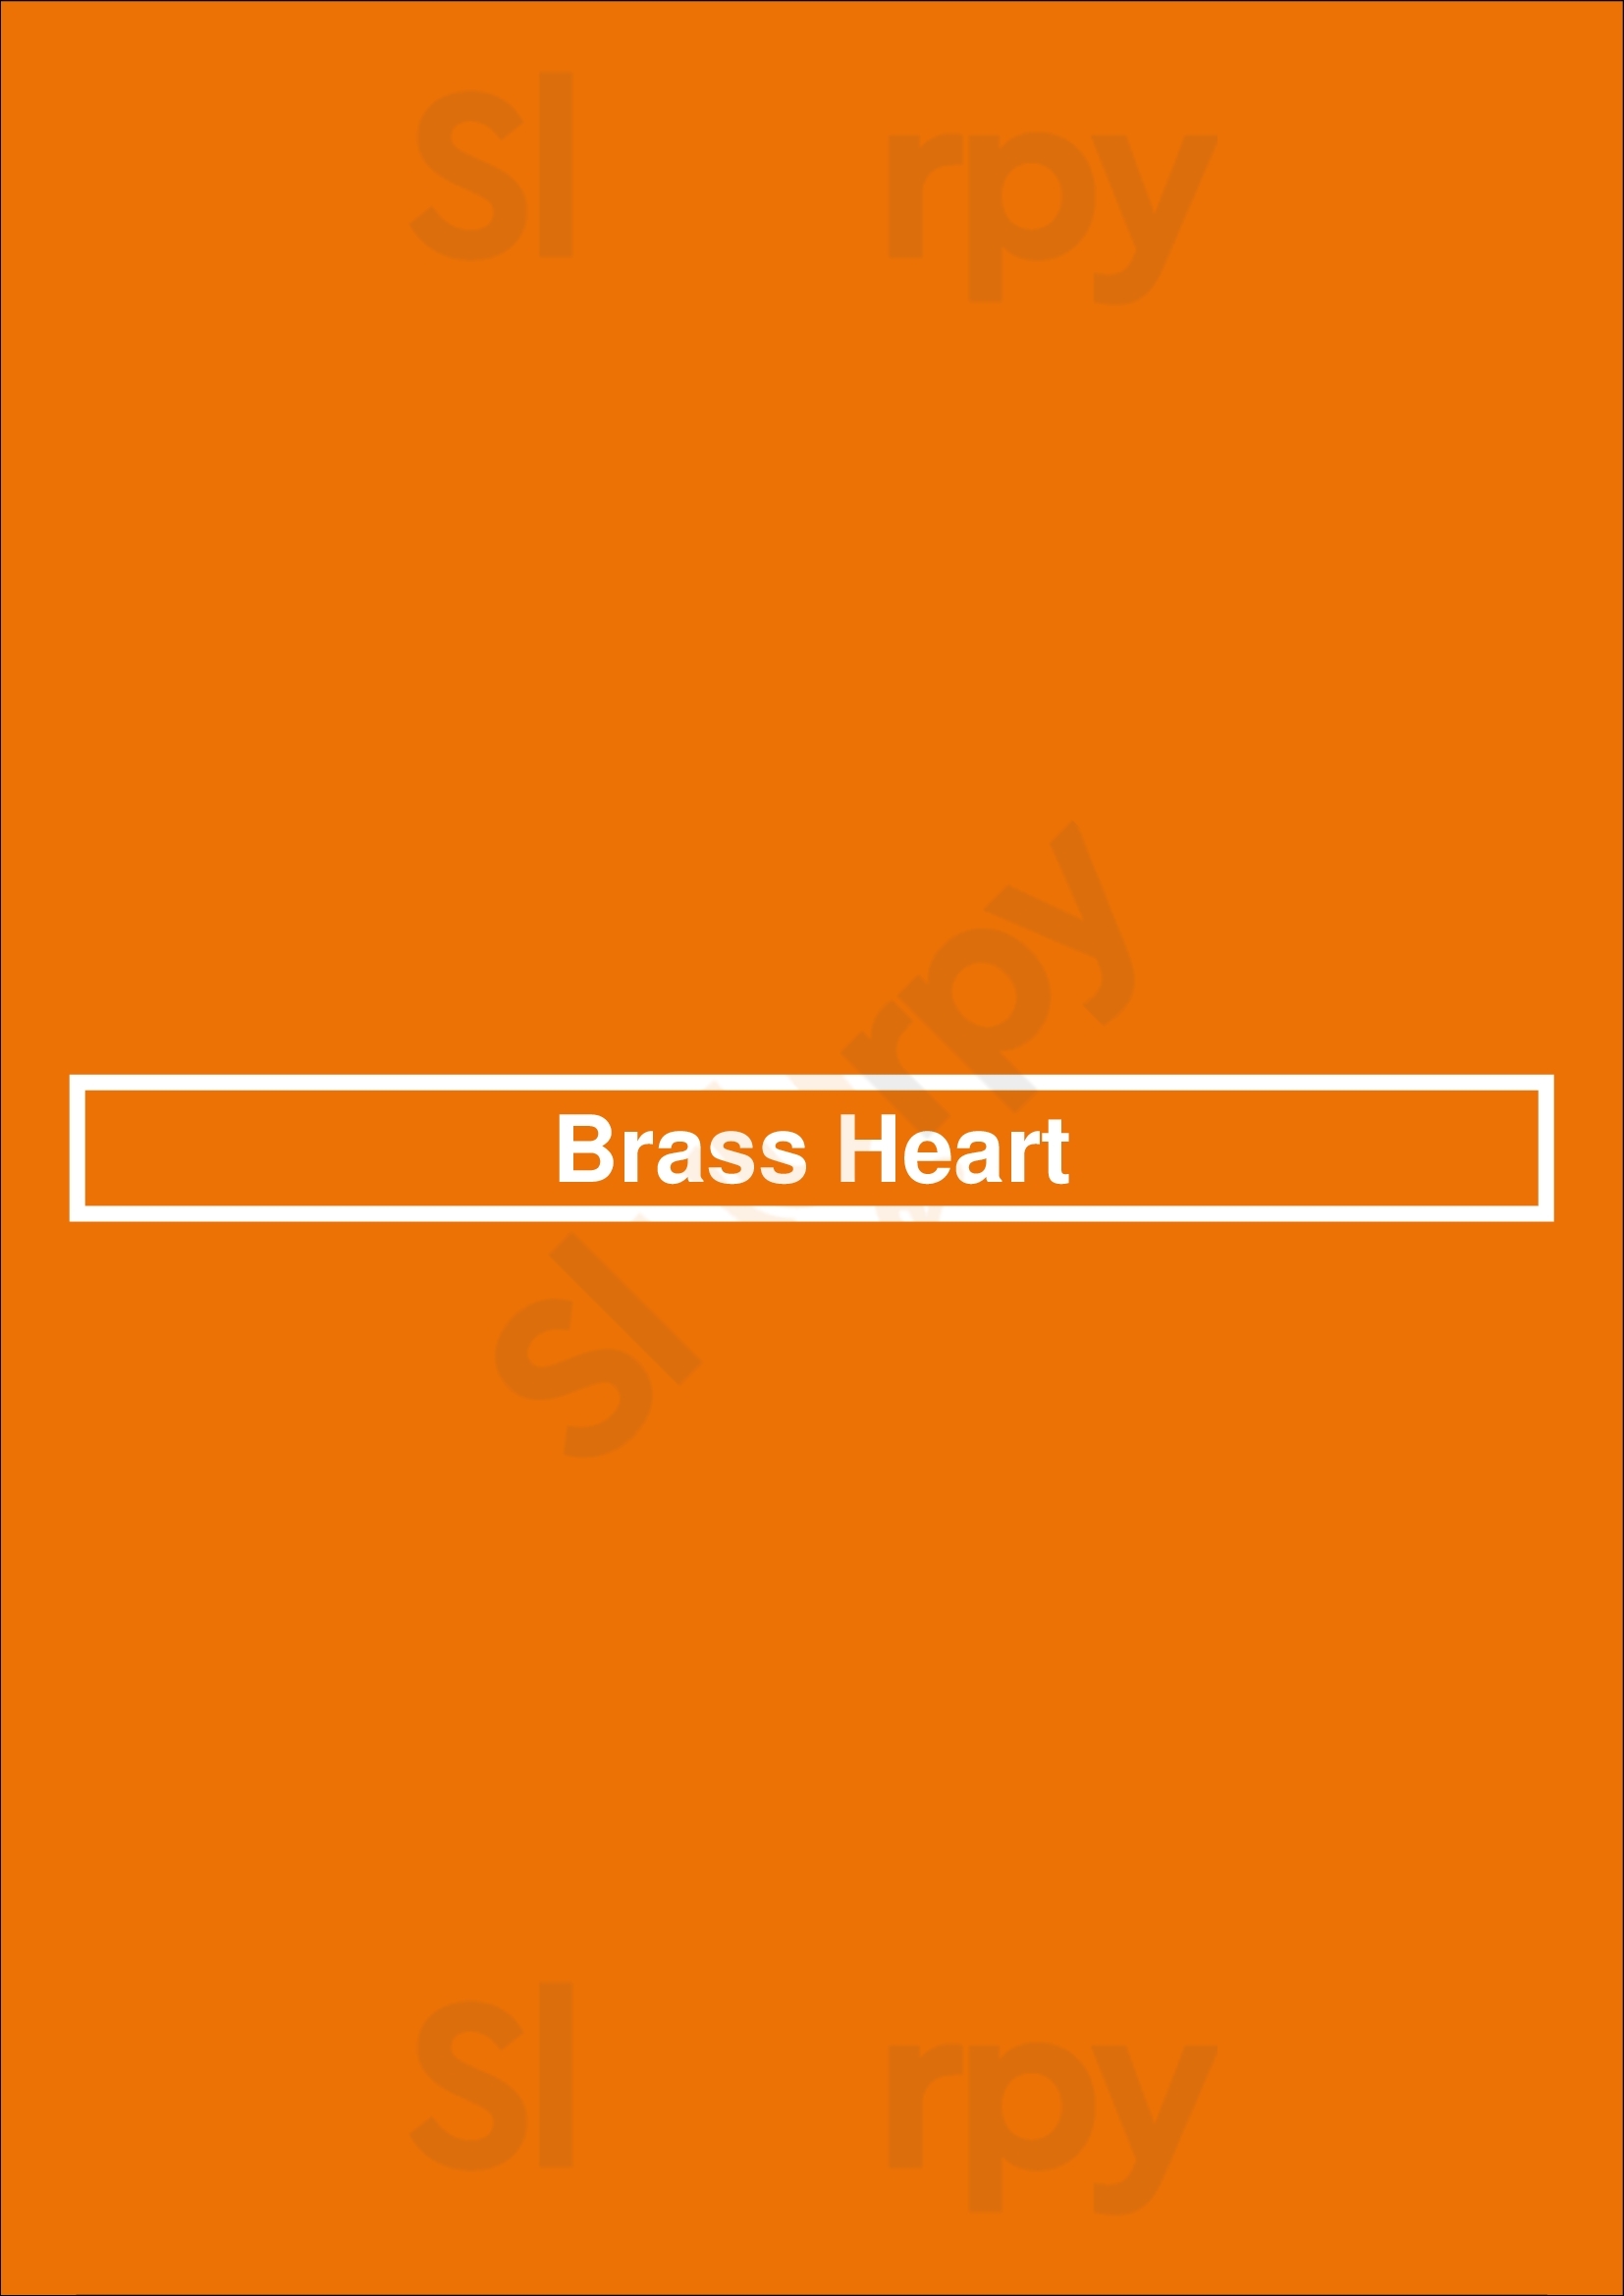 Brass Heart Chicago Menu - 1